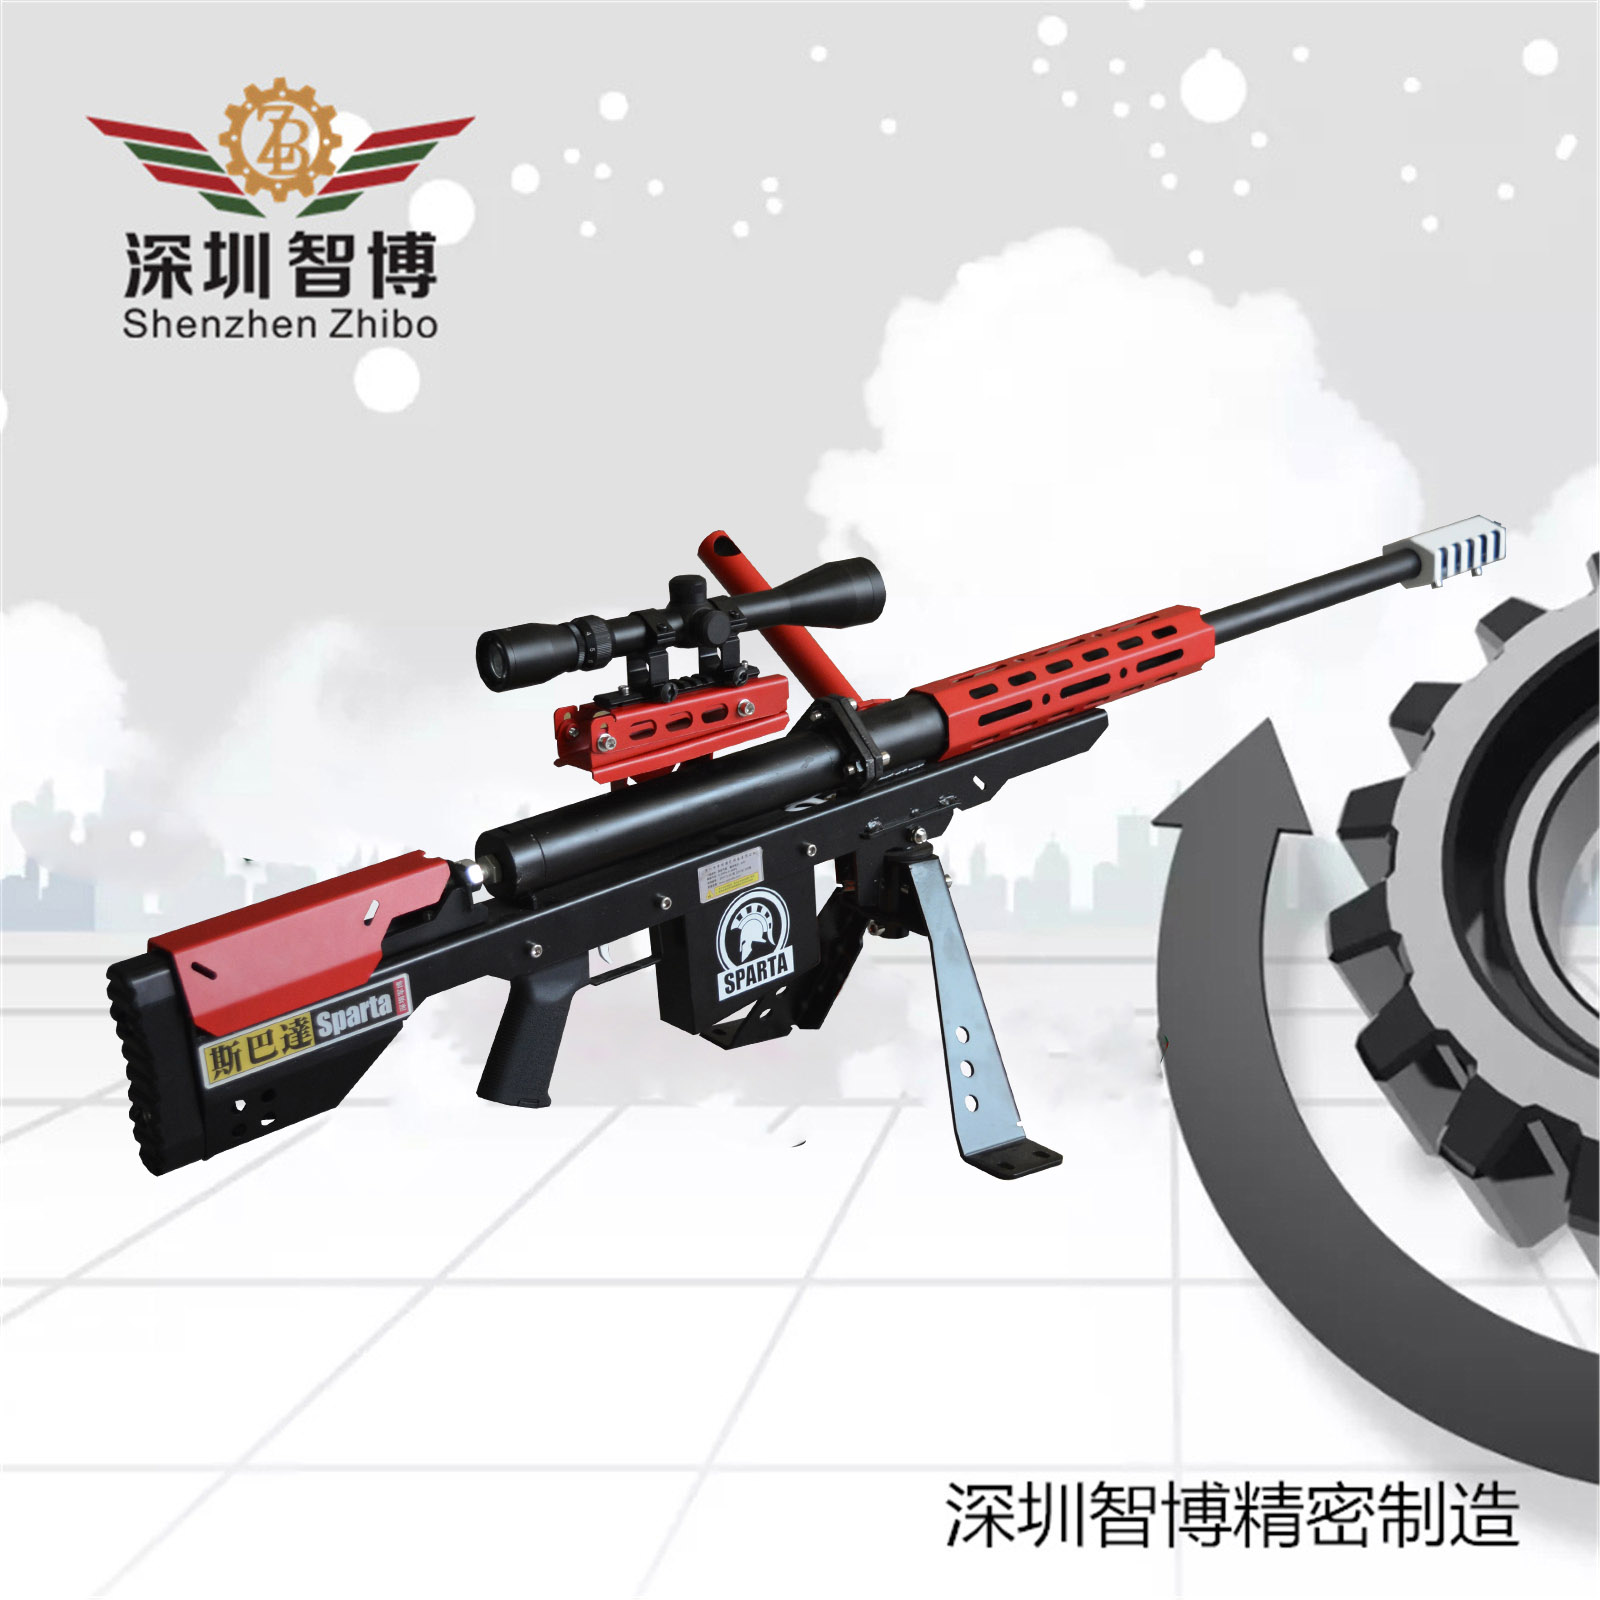 深圳市智博精密机械制造有限公司-游乐气炮-斯巴达